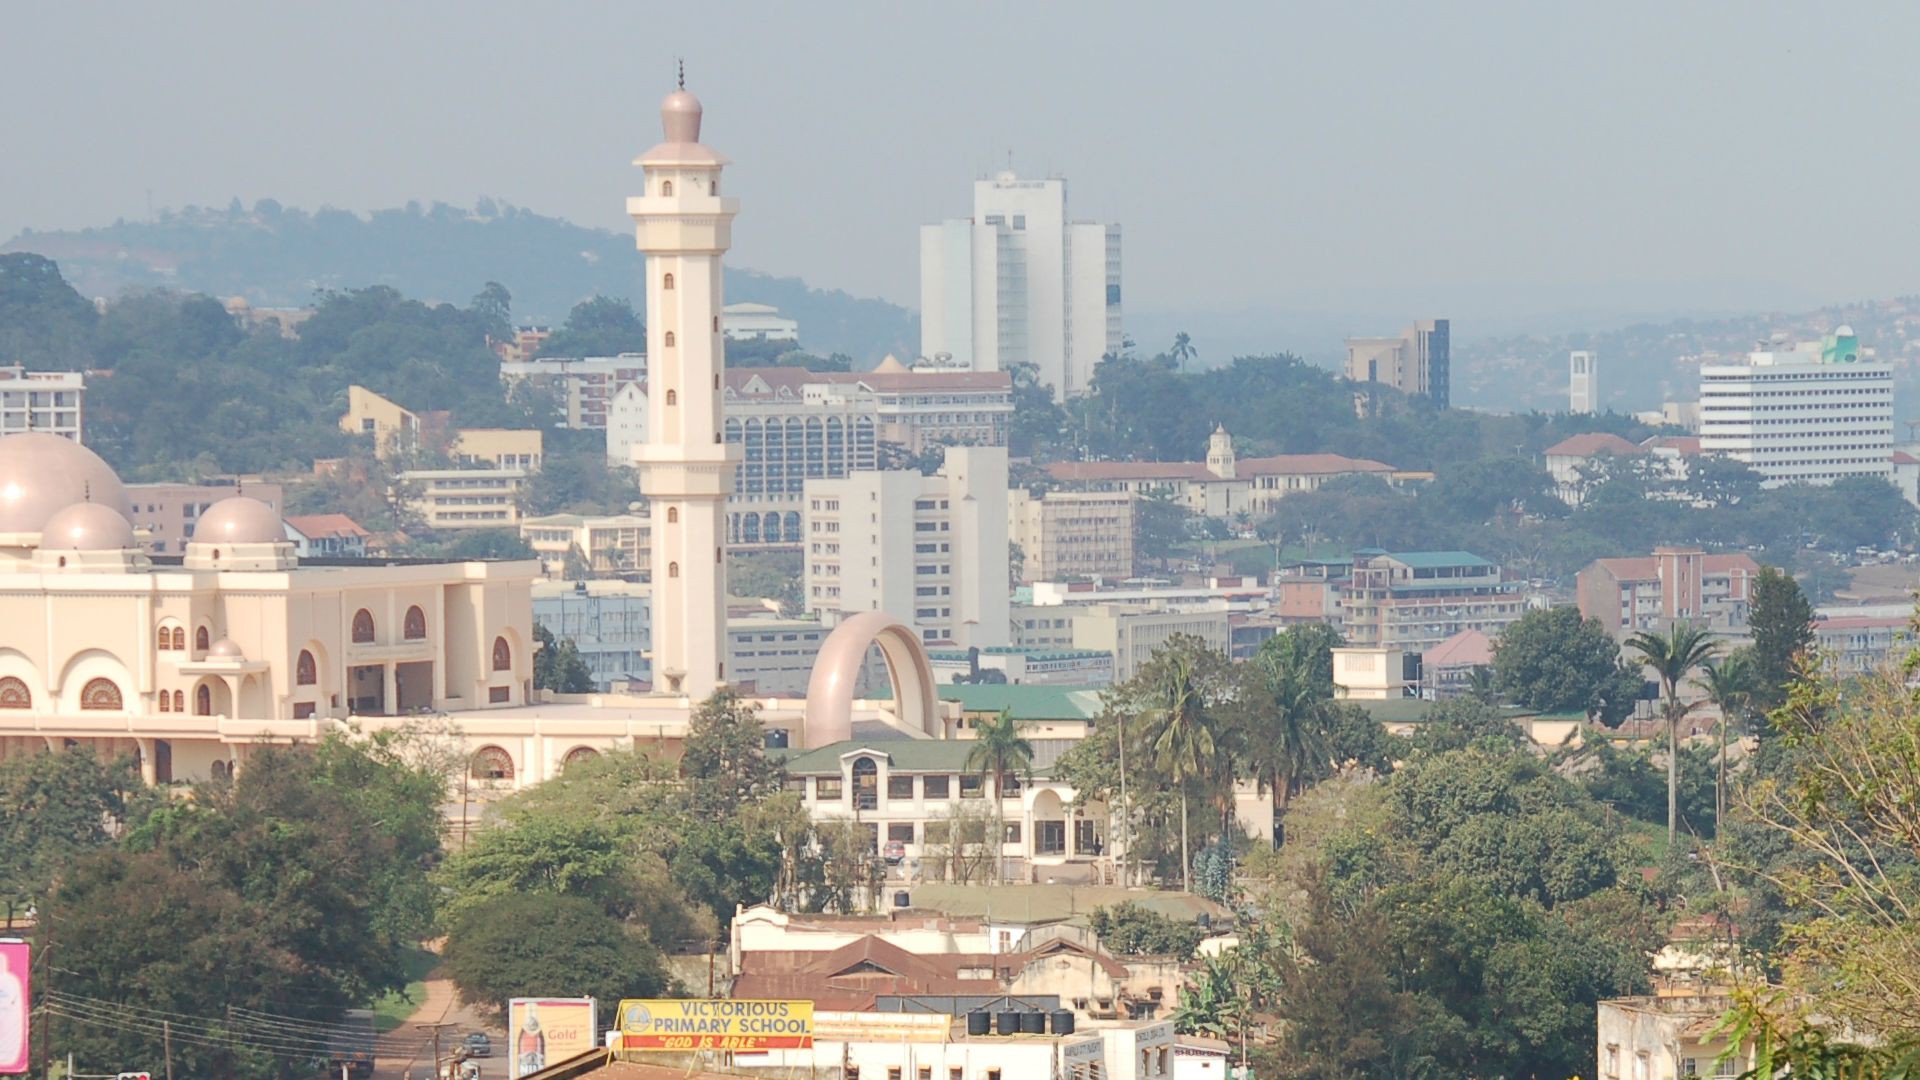 Un incident diplomatique grave se serait produit à la nonciature de Kampala, la capitale de l'Ouganda (Photo: Dylan Walters/Flickr/CC BY 2.0)